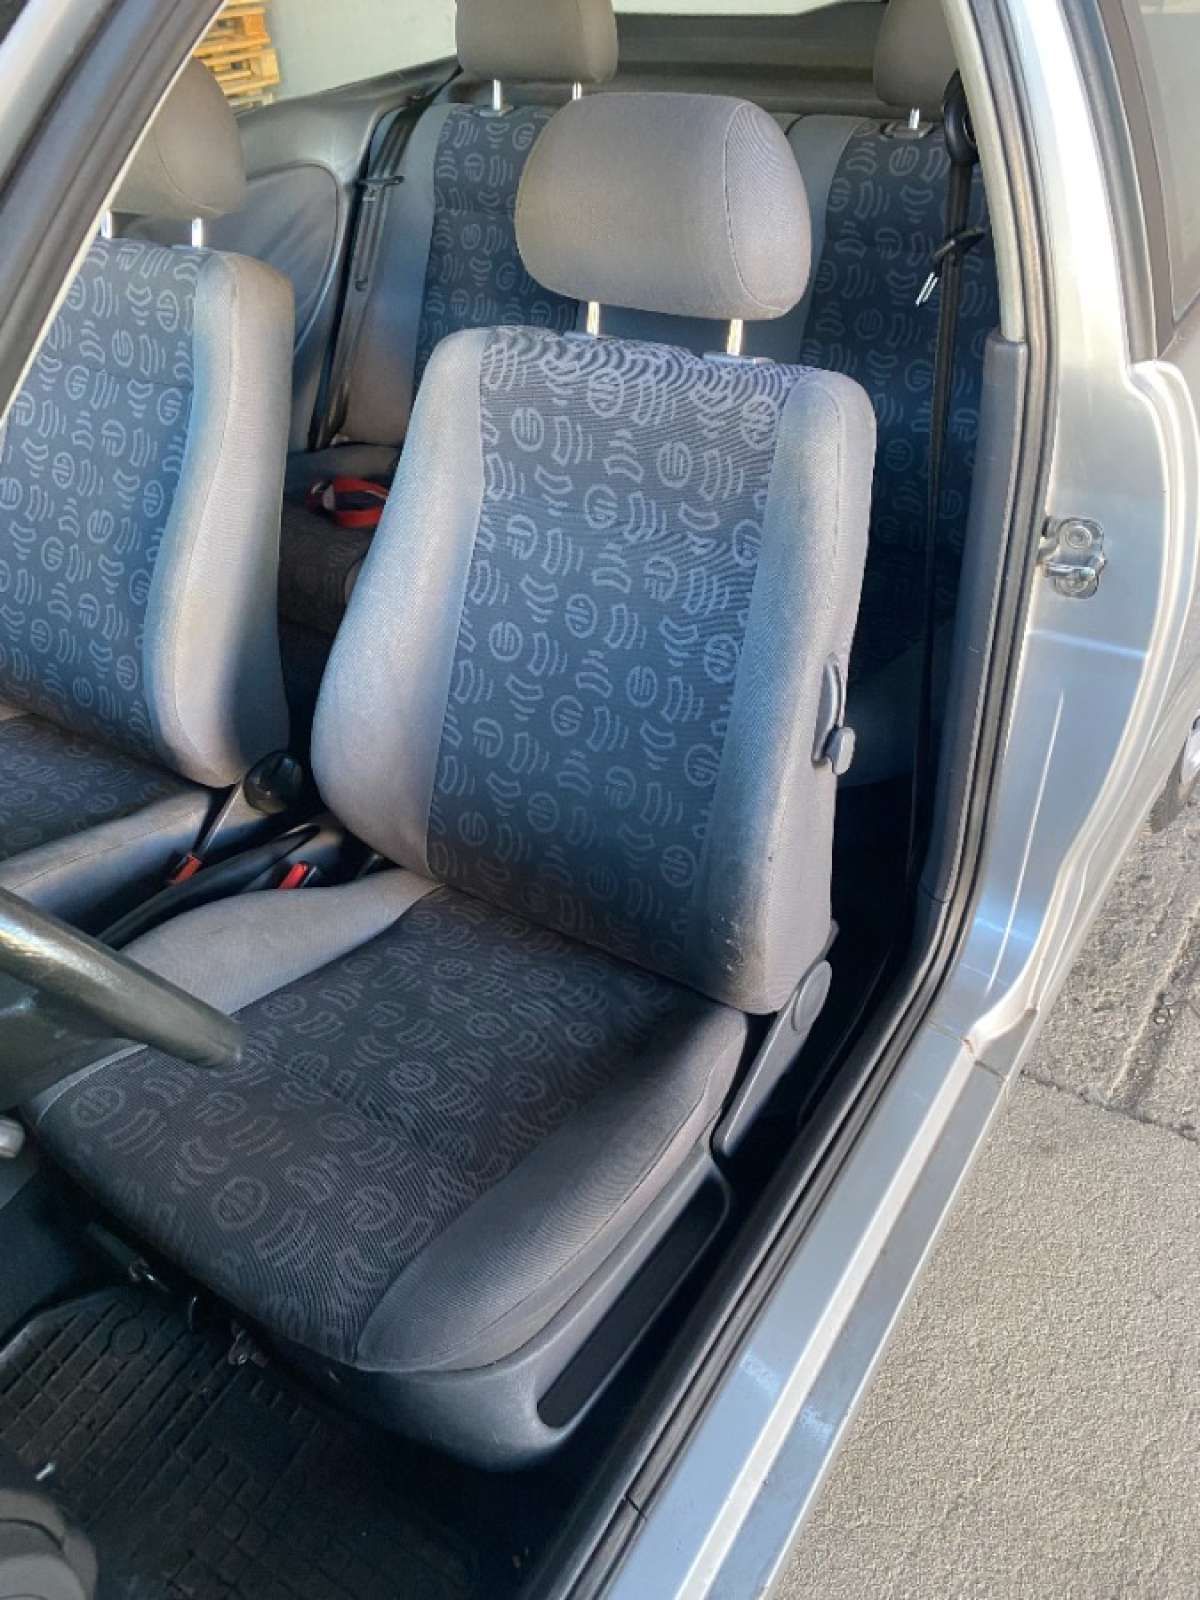 Seat Ibiza Signo 1,4 benzyna serwisowany - nowe sprzęgło i rozrząd